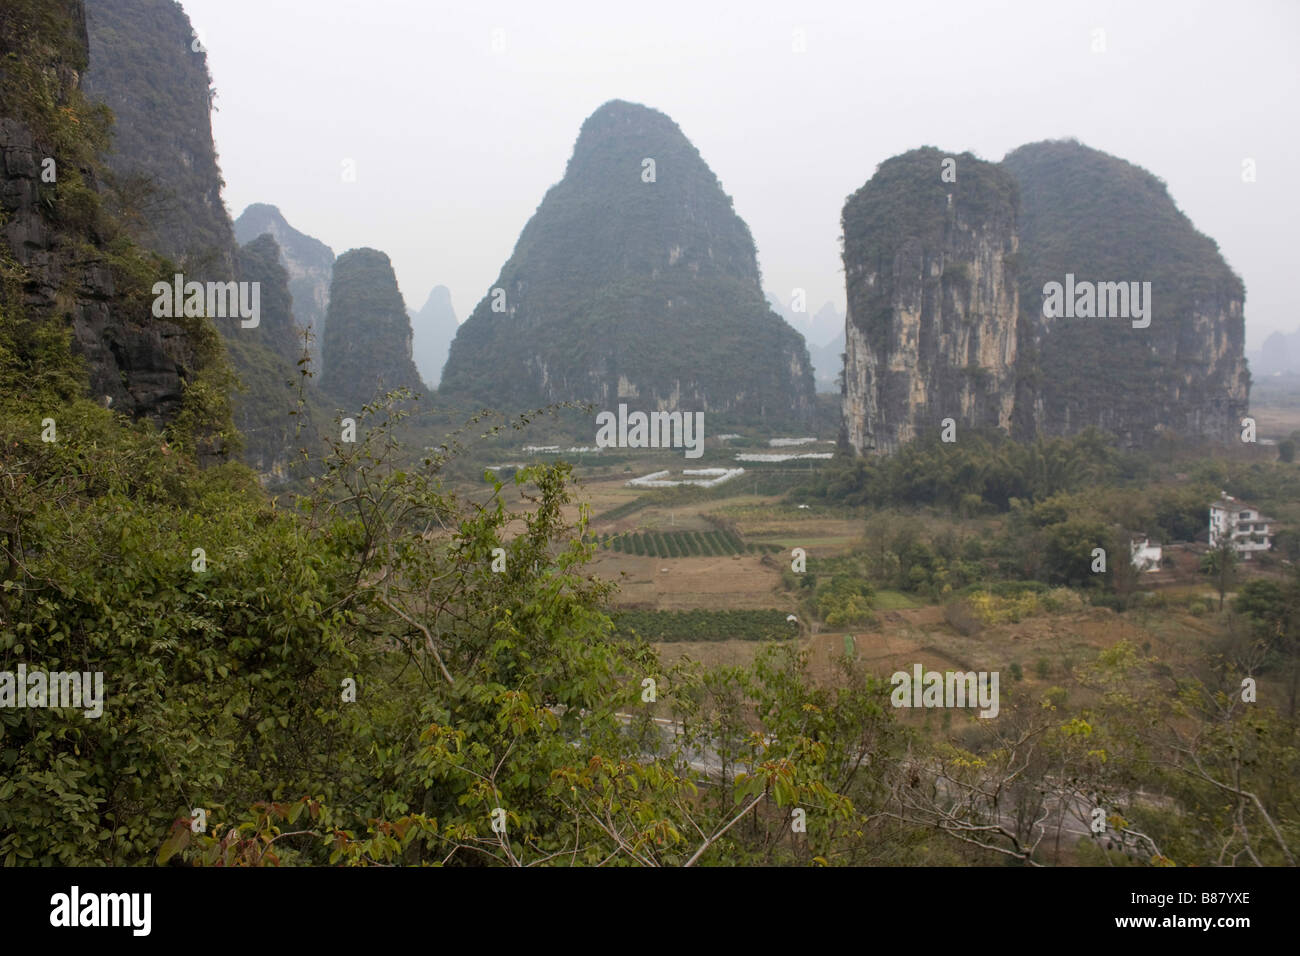 Kalksteine Zinnen sprießen an jeder Ecke, eine typische Landschaft in Yangshuo China Stockfoto